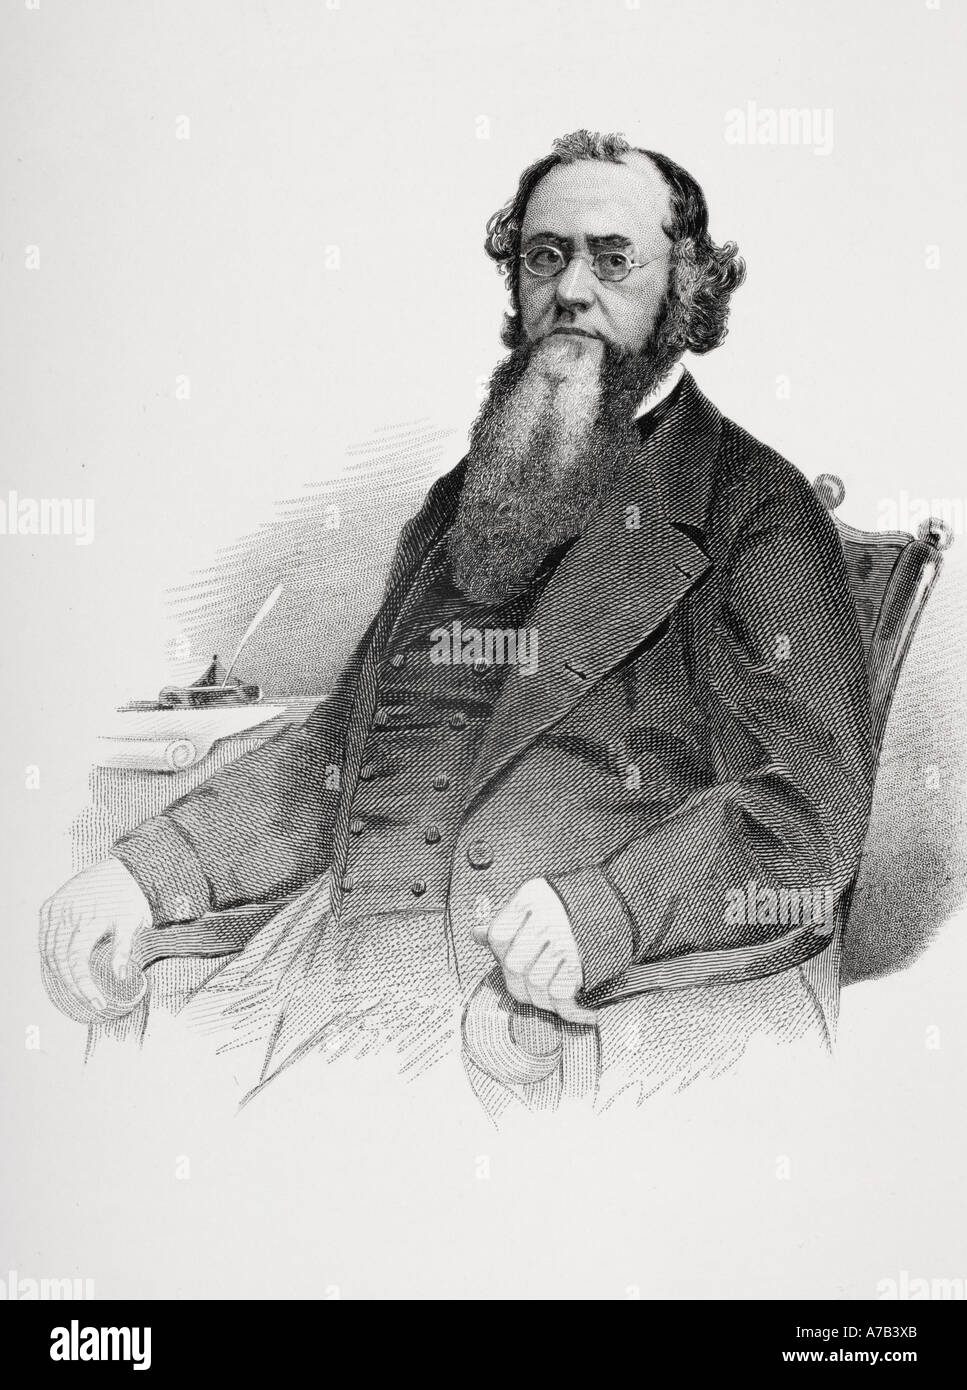 Edwin McMasters Stanton, 1814 - 1869. Amerikanischer Rechtsanwalt und Politiker und Sekretär des Krieges während des Amerikanischen Bürgerkriegs. Stockfoto